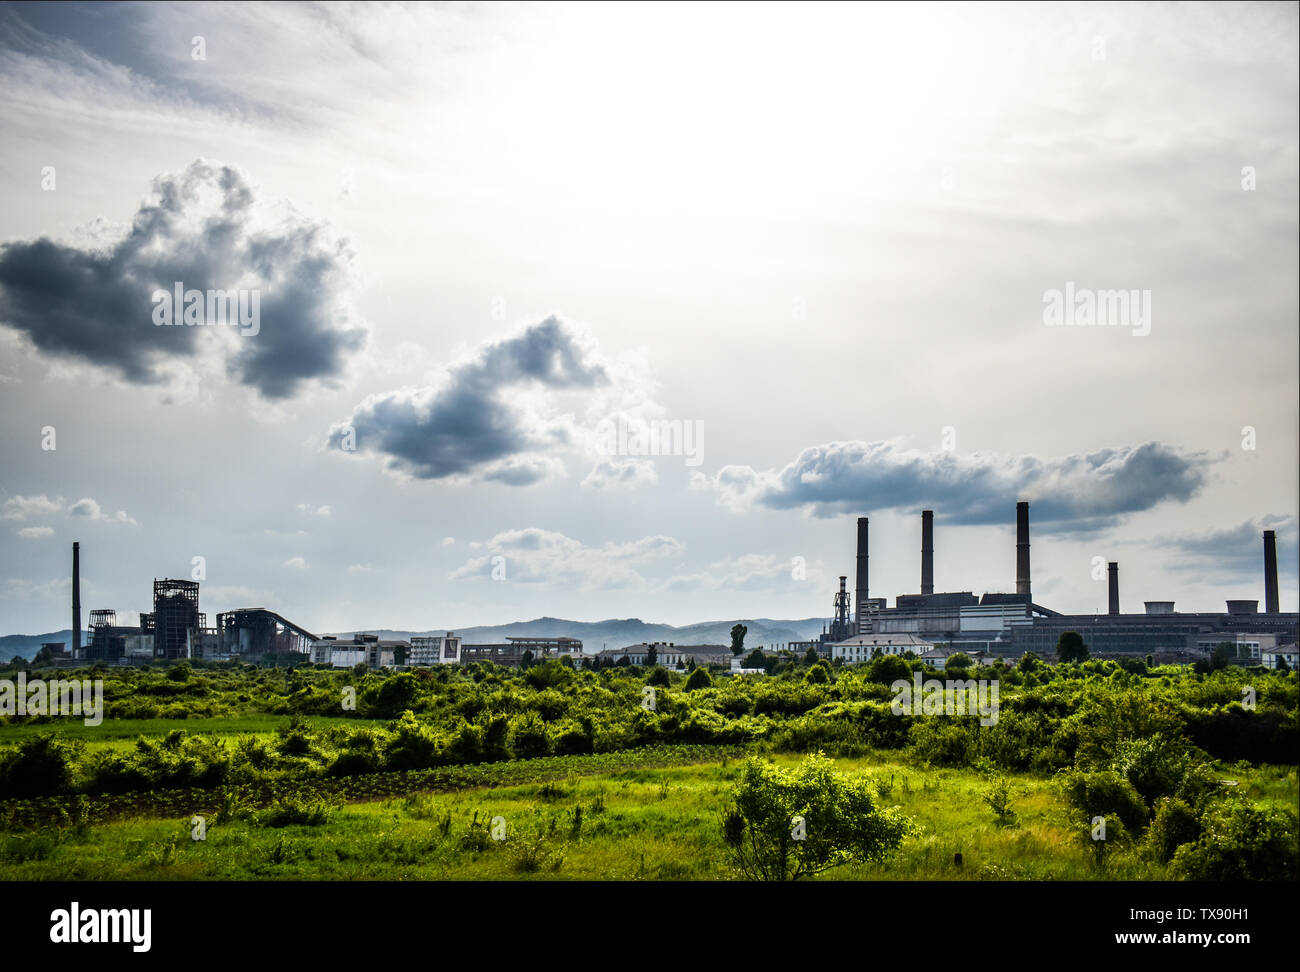 Vista de la antigua planta de energía con grandes hornos de cemento . Caído química industria comunista. Foto de stock